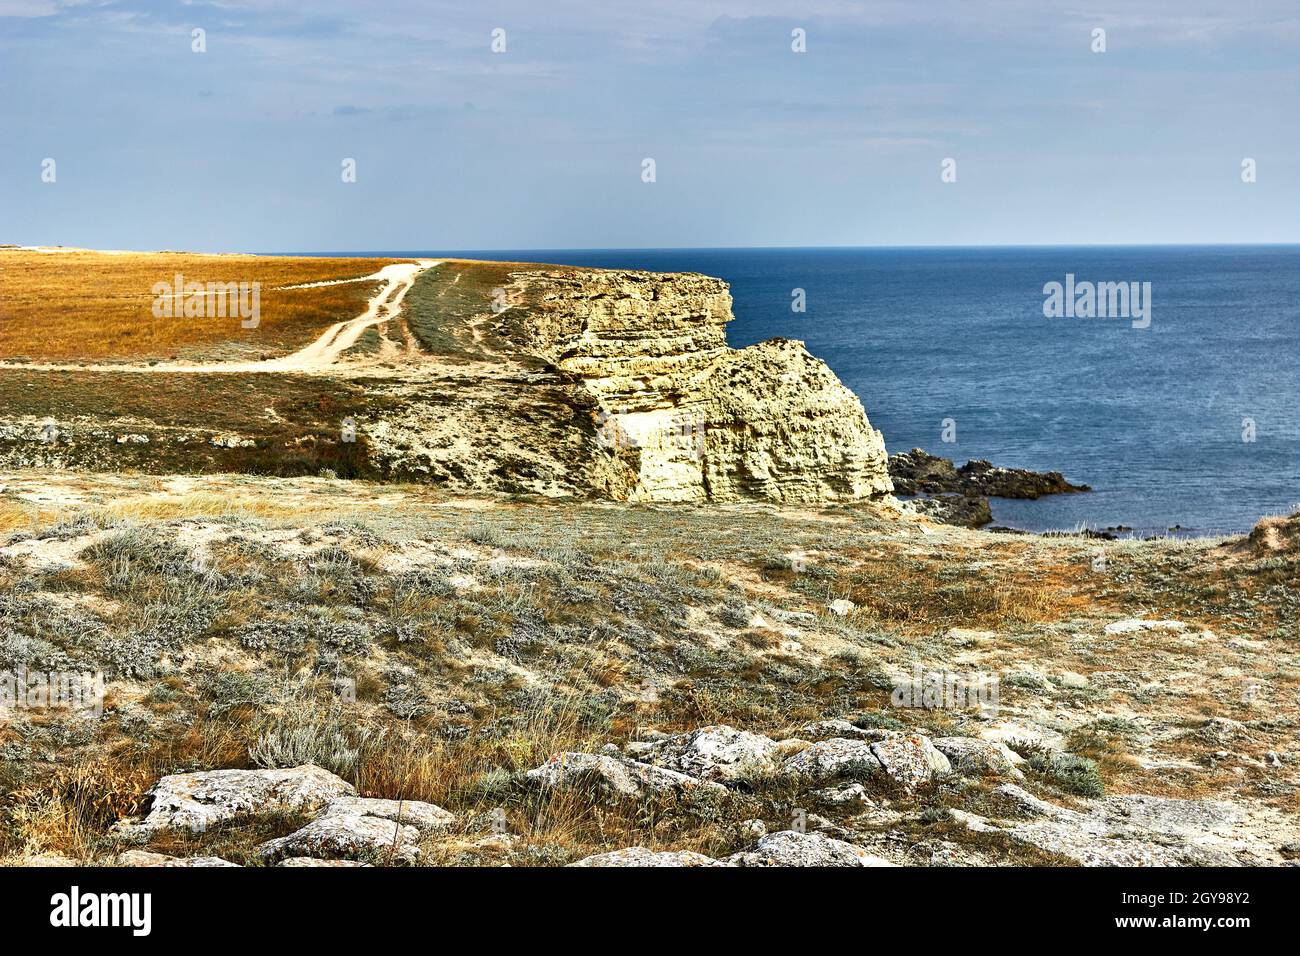 Kreidefelsen, Kap Tarkhankut, Krim. Eine Landstraße am Rande der Klippe. Orange Land, ein Kap am Meer. Seeseite, Horizont, ruhiges blaues Meer. Stockfoto